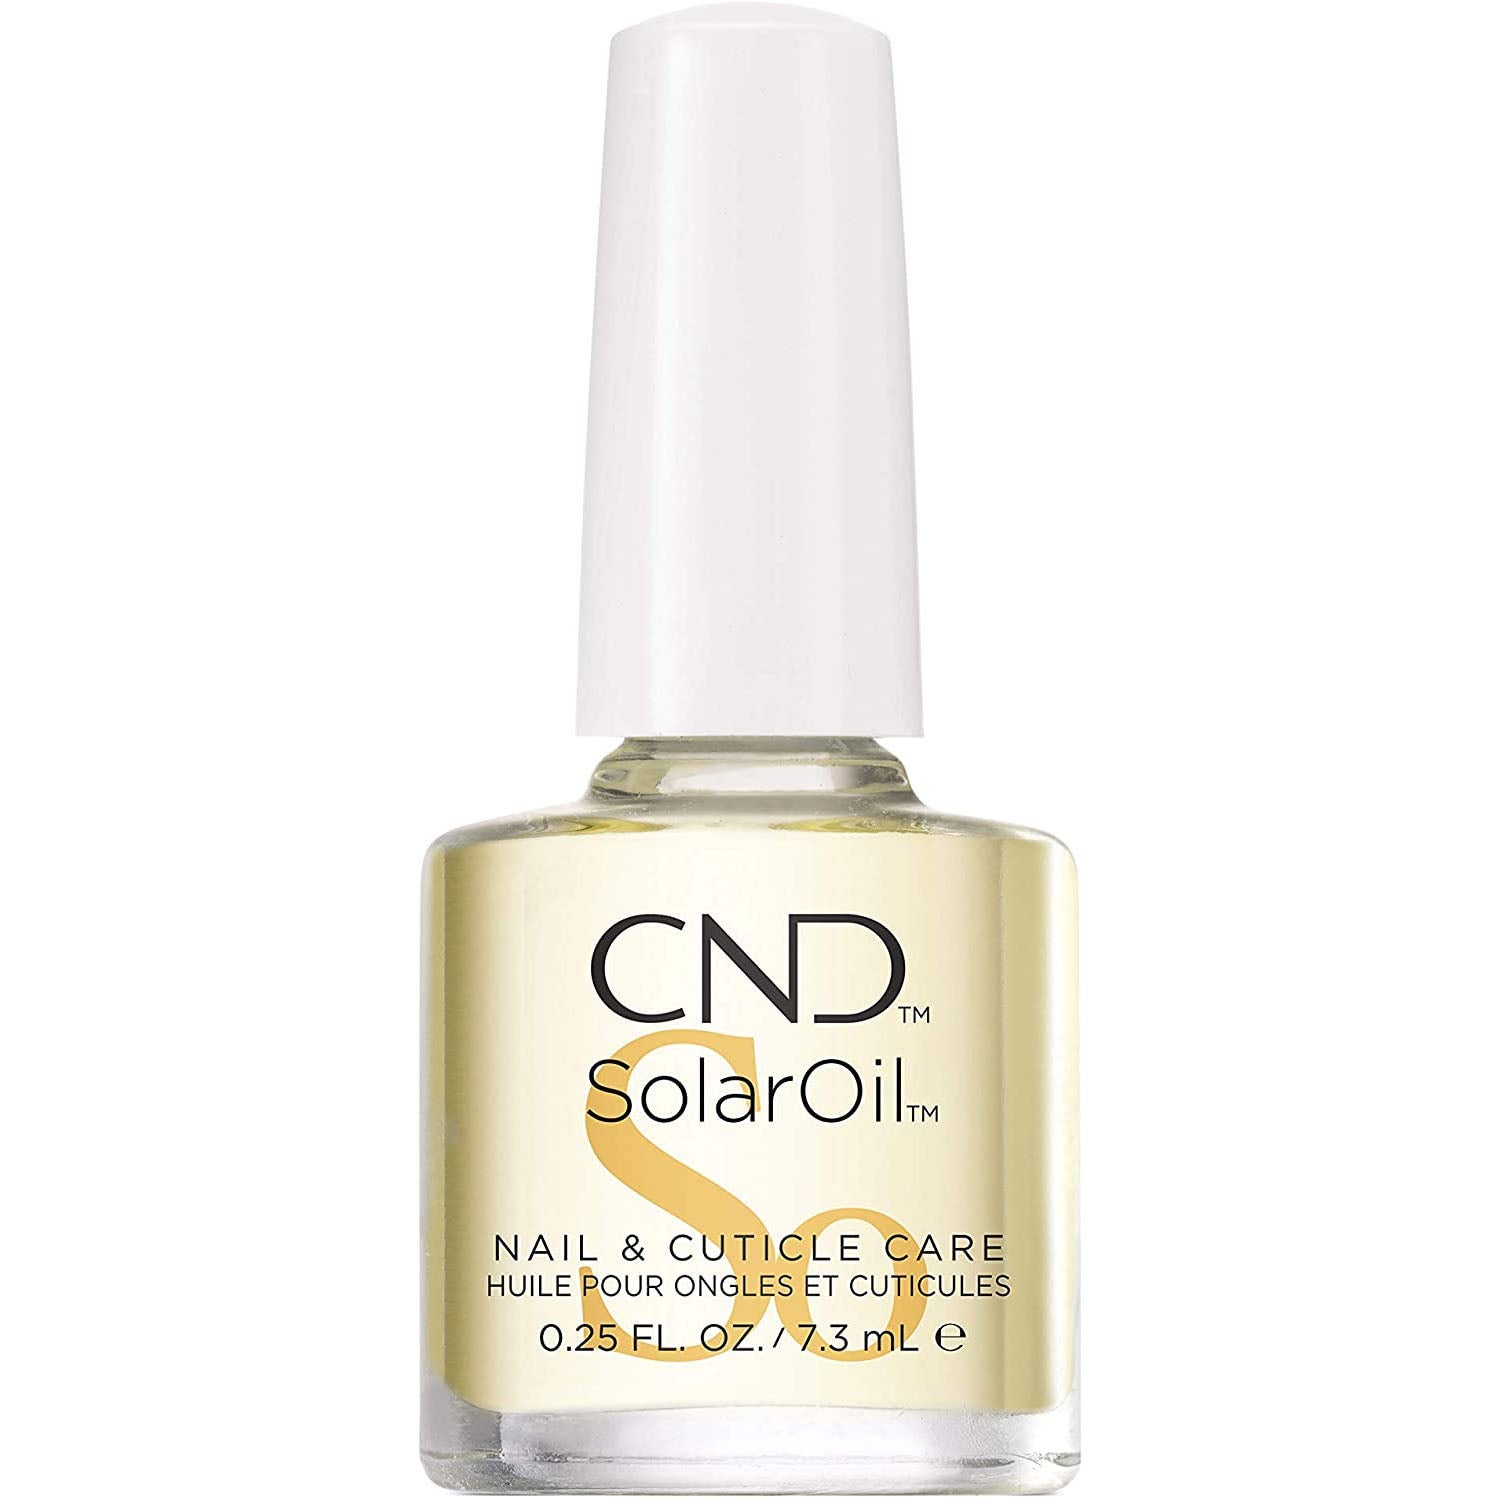 CND Solar Oil 7.3ml Cuticle Nail Care Manicure Treatment Nourish SolarOil